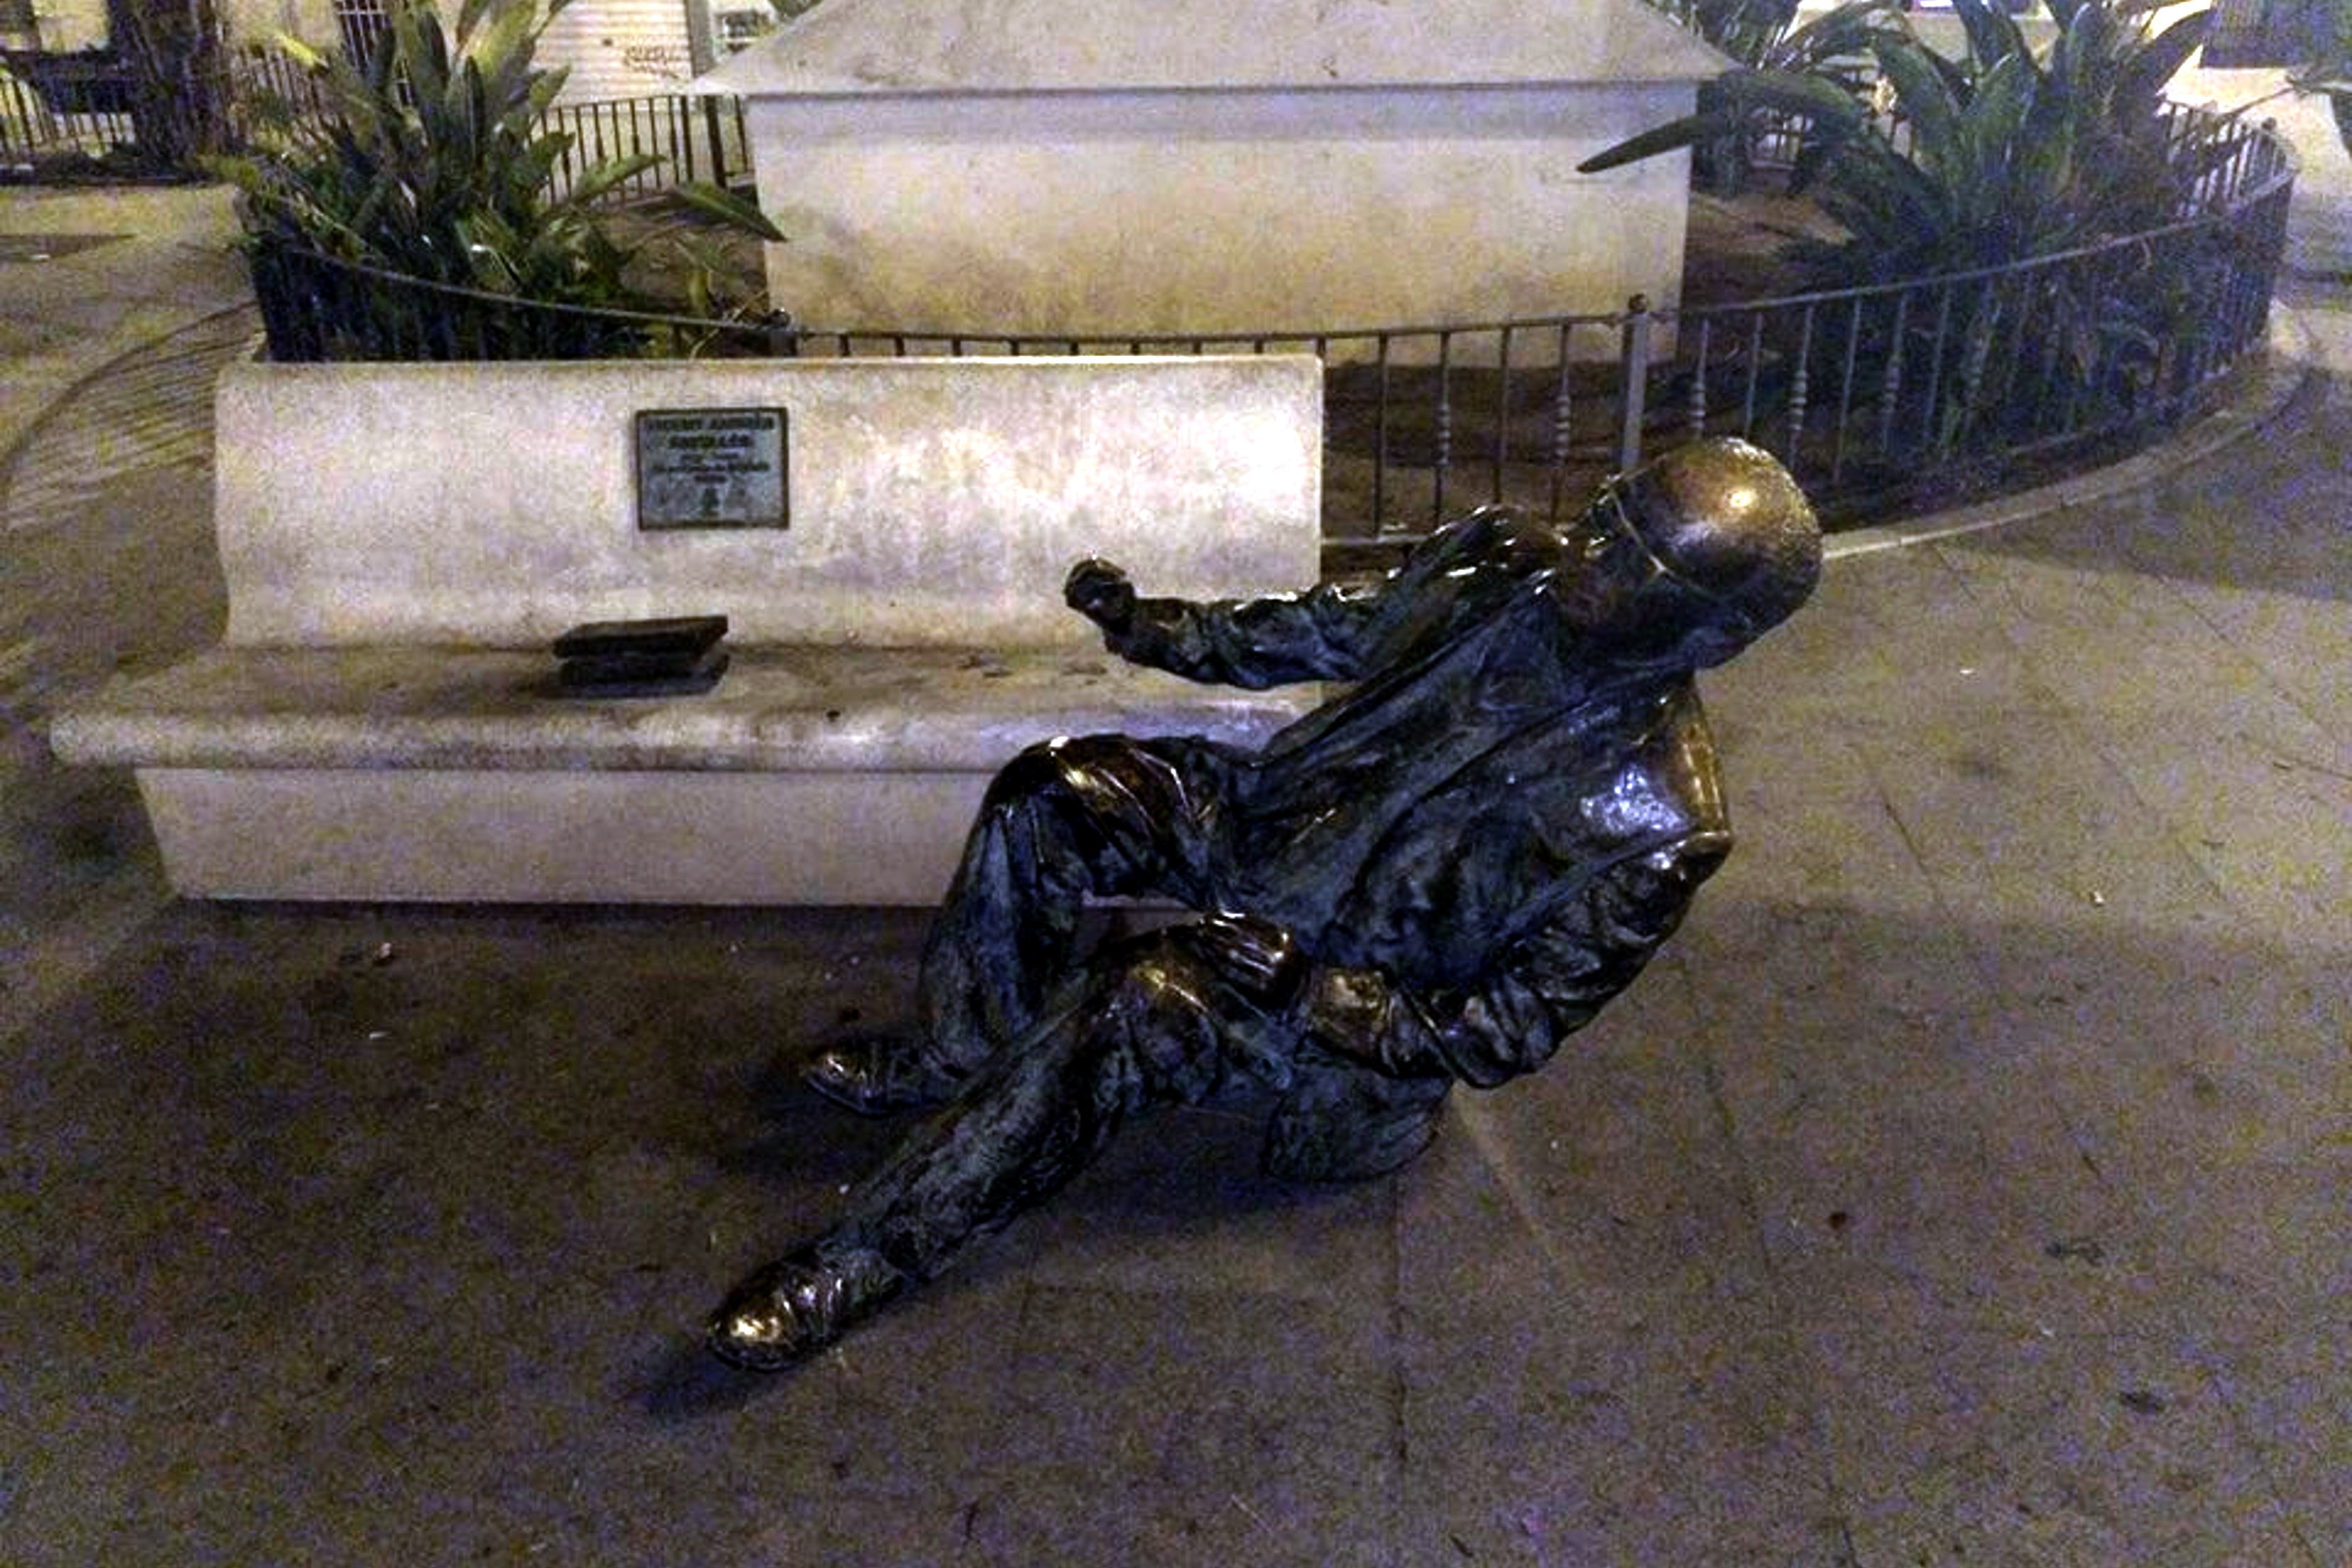 Arrancan la estatua del poeta Vincent Andrés Estellés en Burjassot